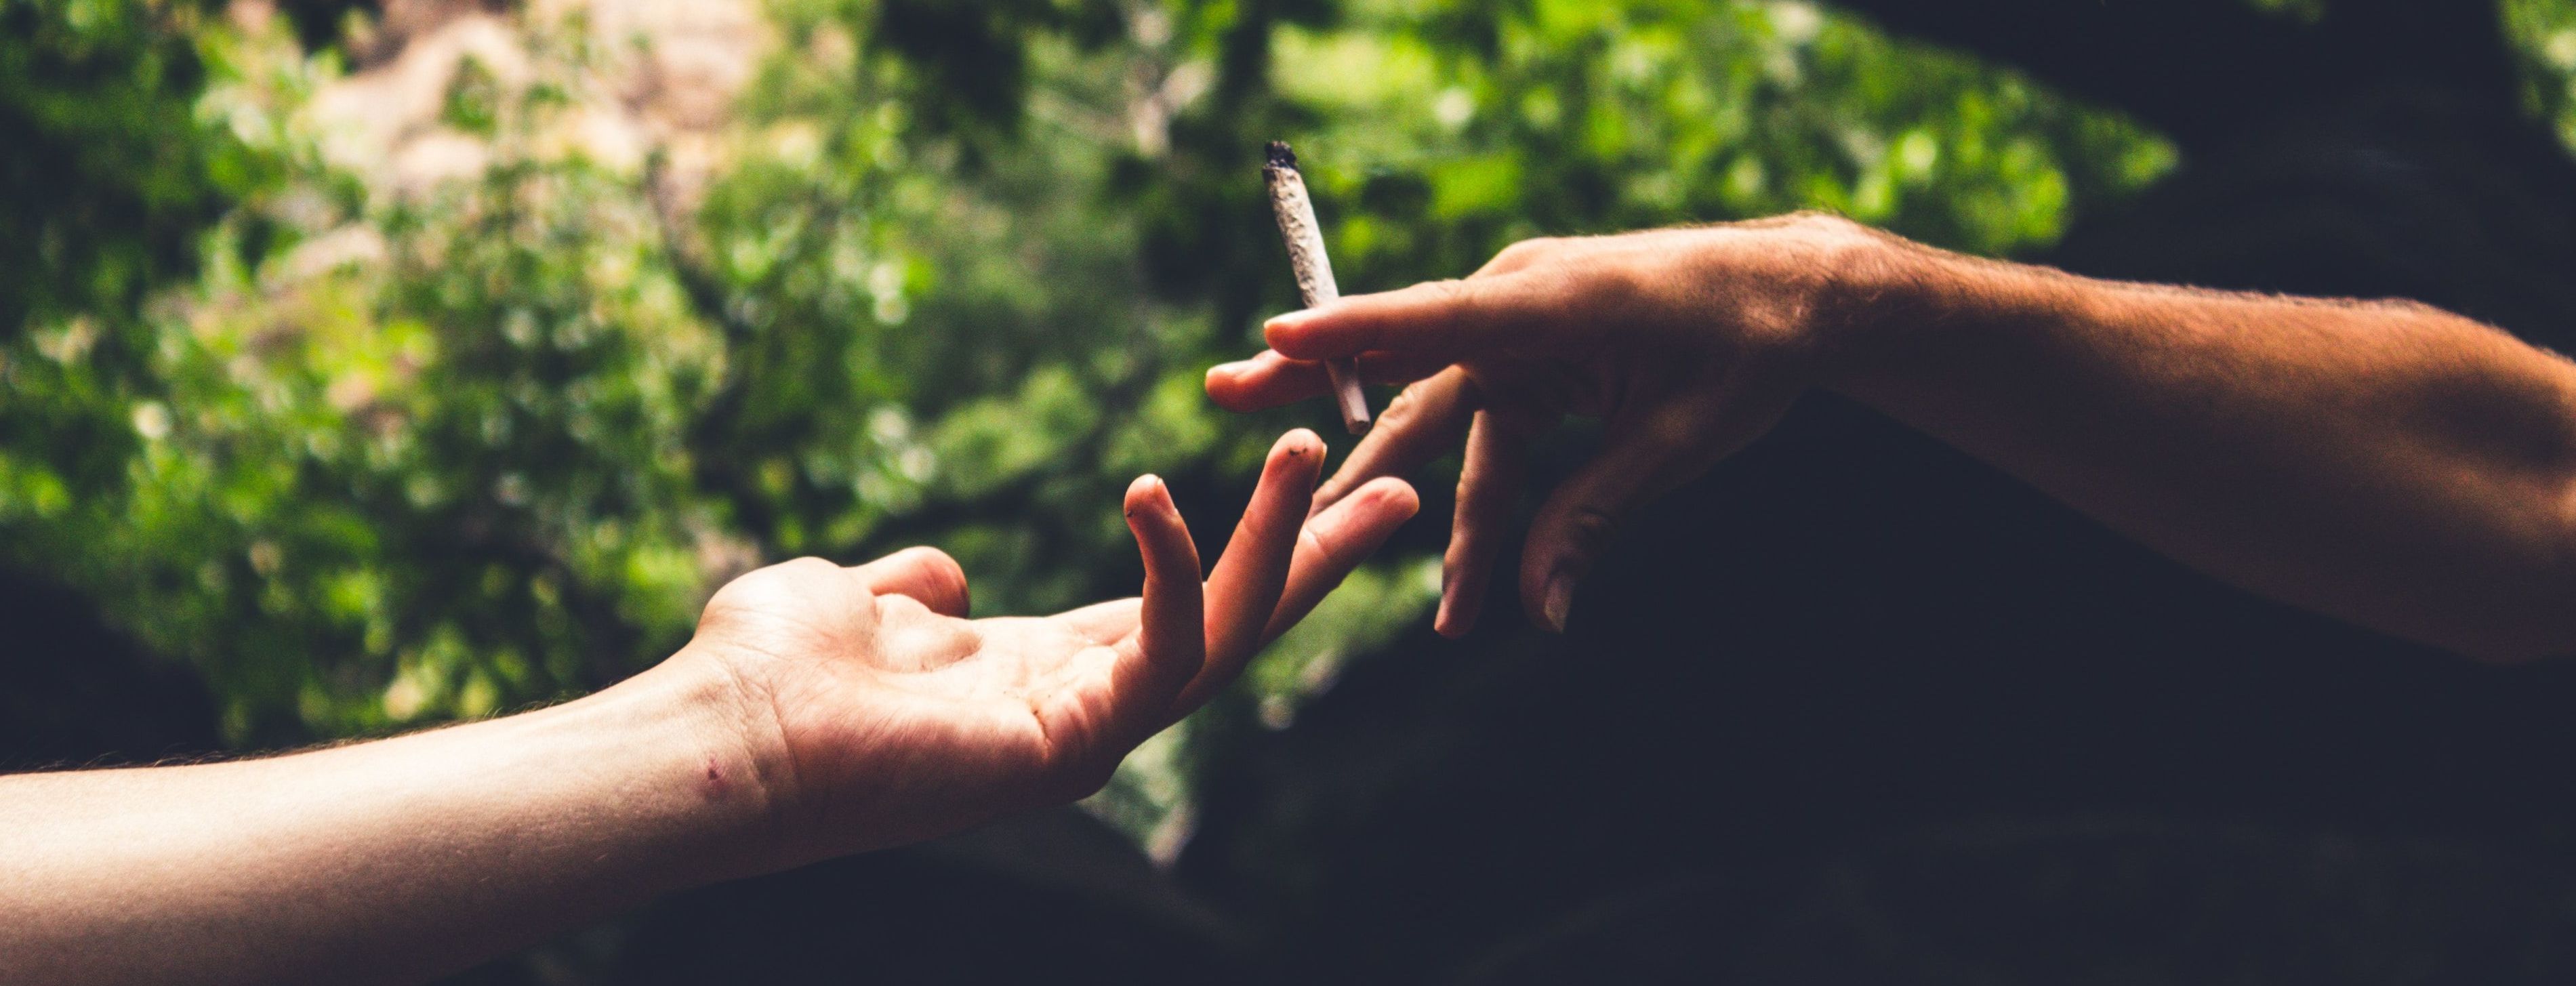 Неочікуваний наслідок легалізації: підлітки вживають менше марихуани, якщо вона узаконена